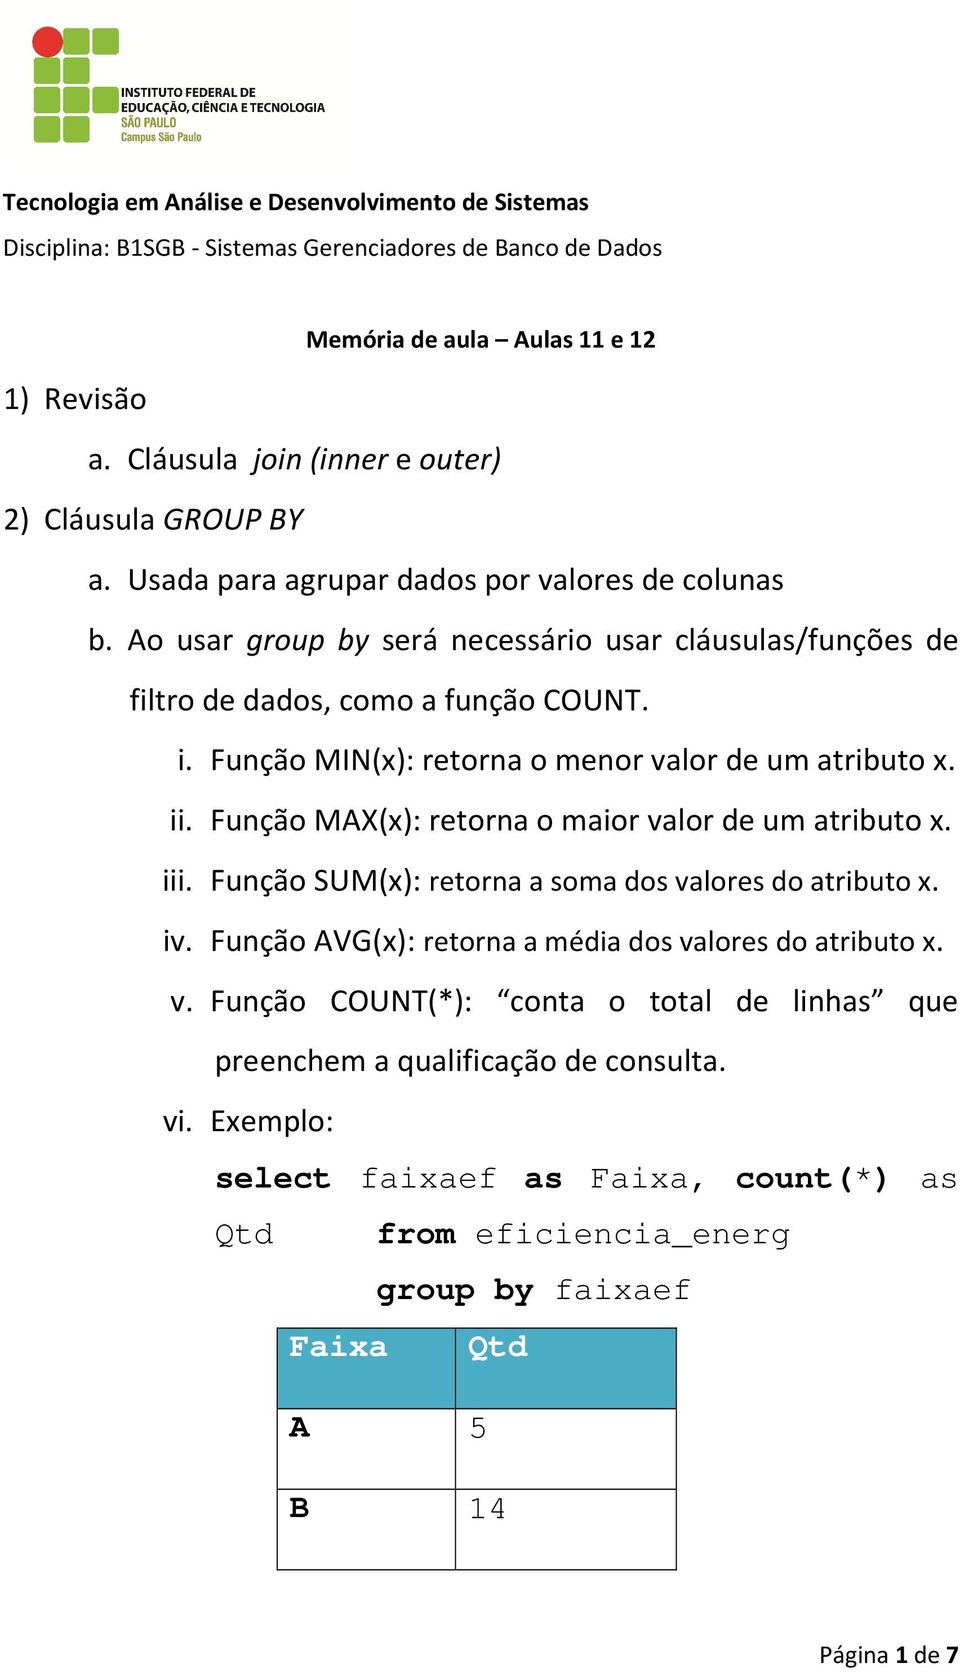 Ao usar group by será necessário usar cláusulas/funções de filtro de dados, como a função COUNT. i. Função MIN(x): retorna o menor valor de um atributo x. ii.